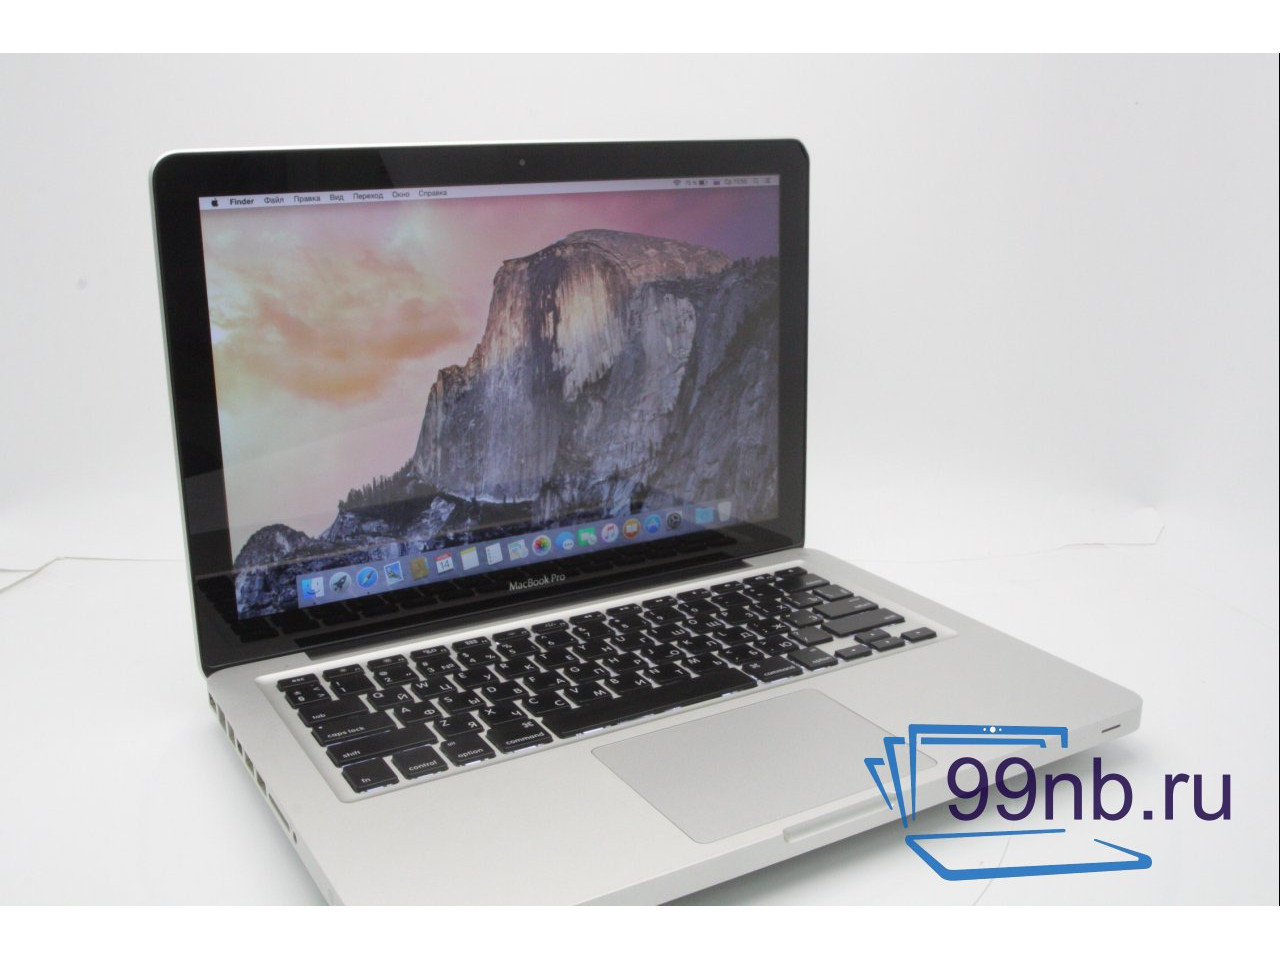 Macbook MacBook Pro (13-inch, Late 201